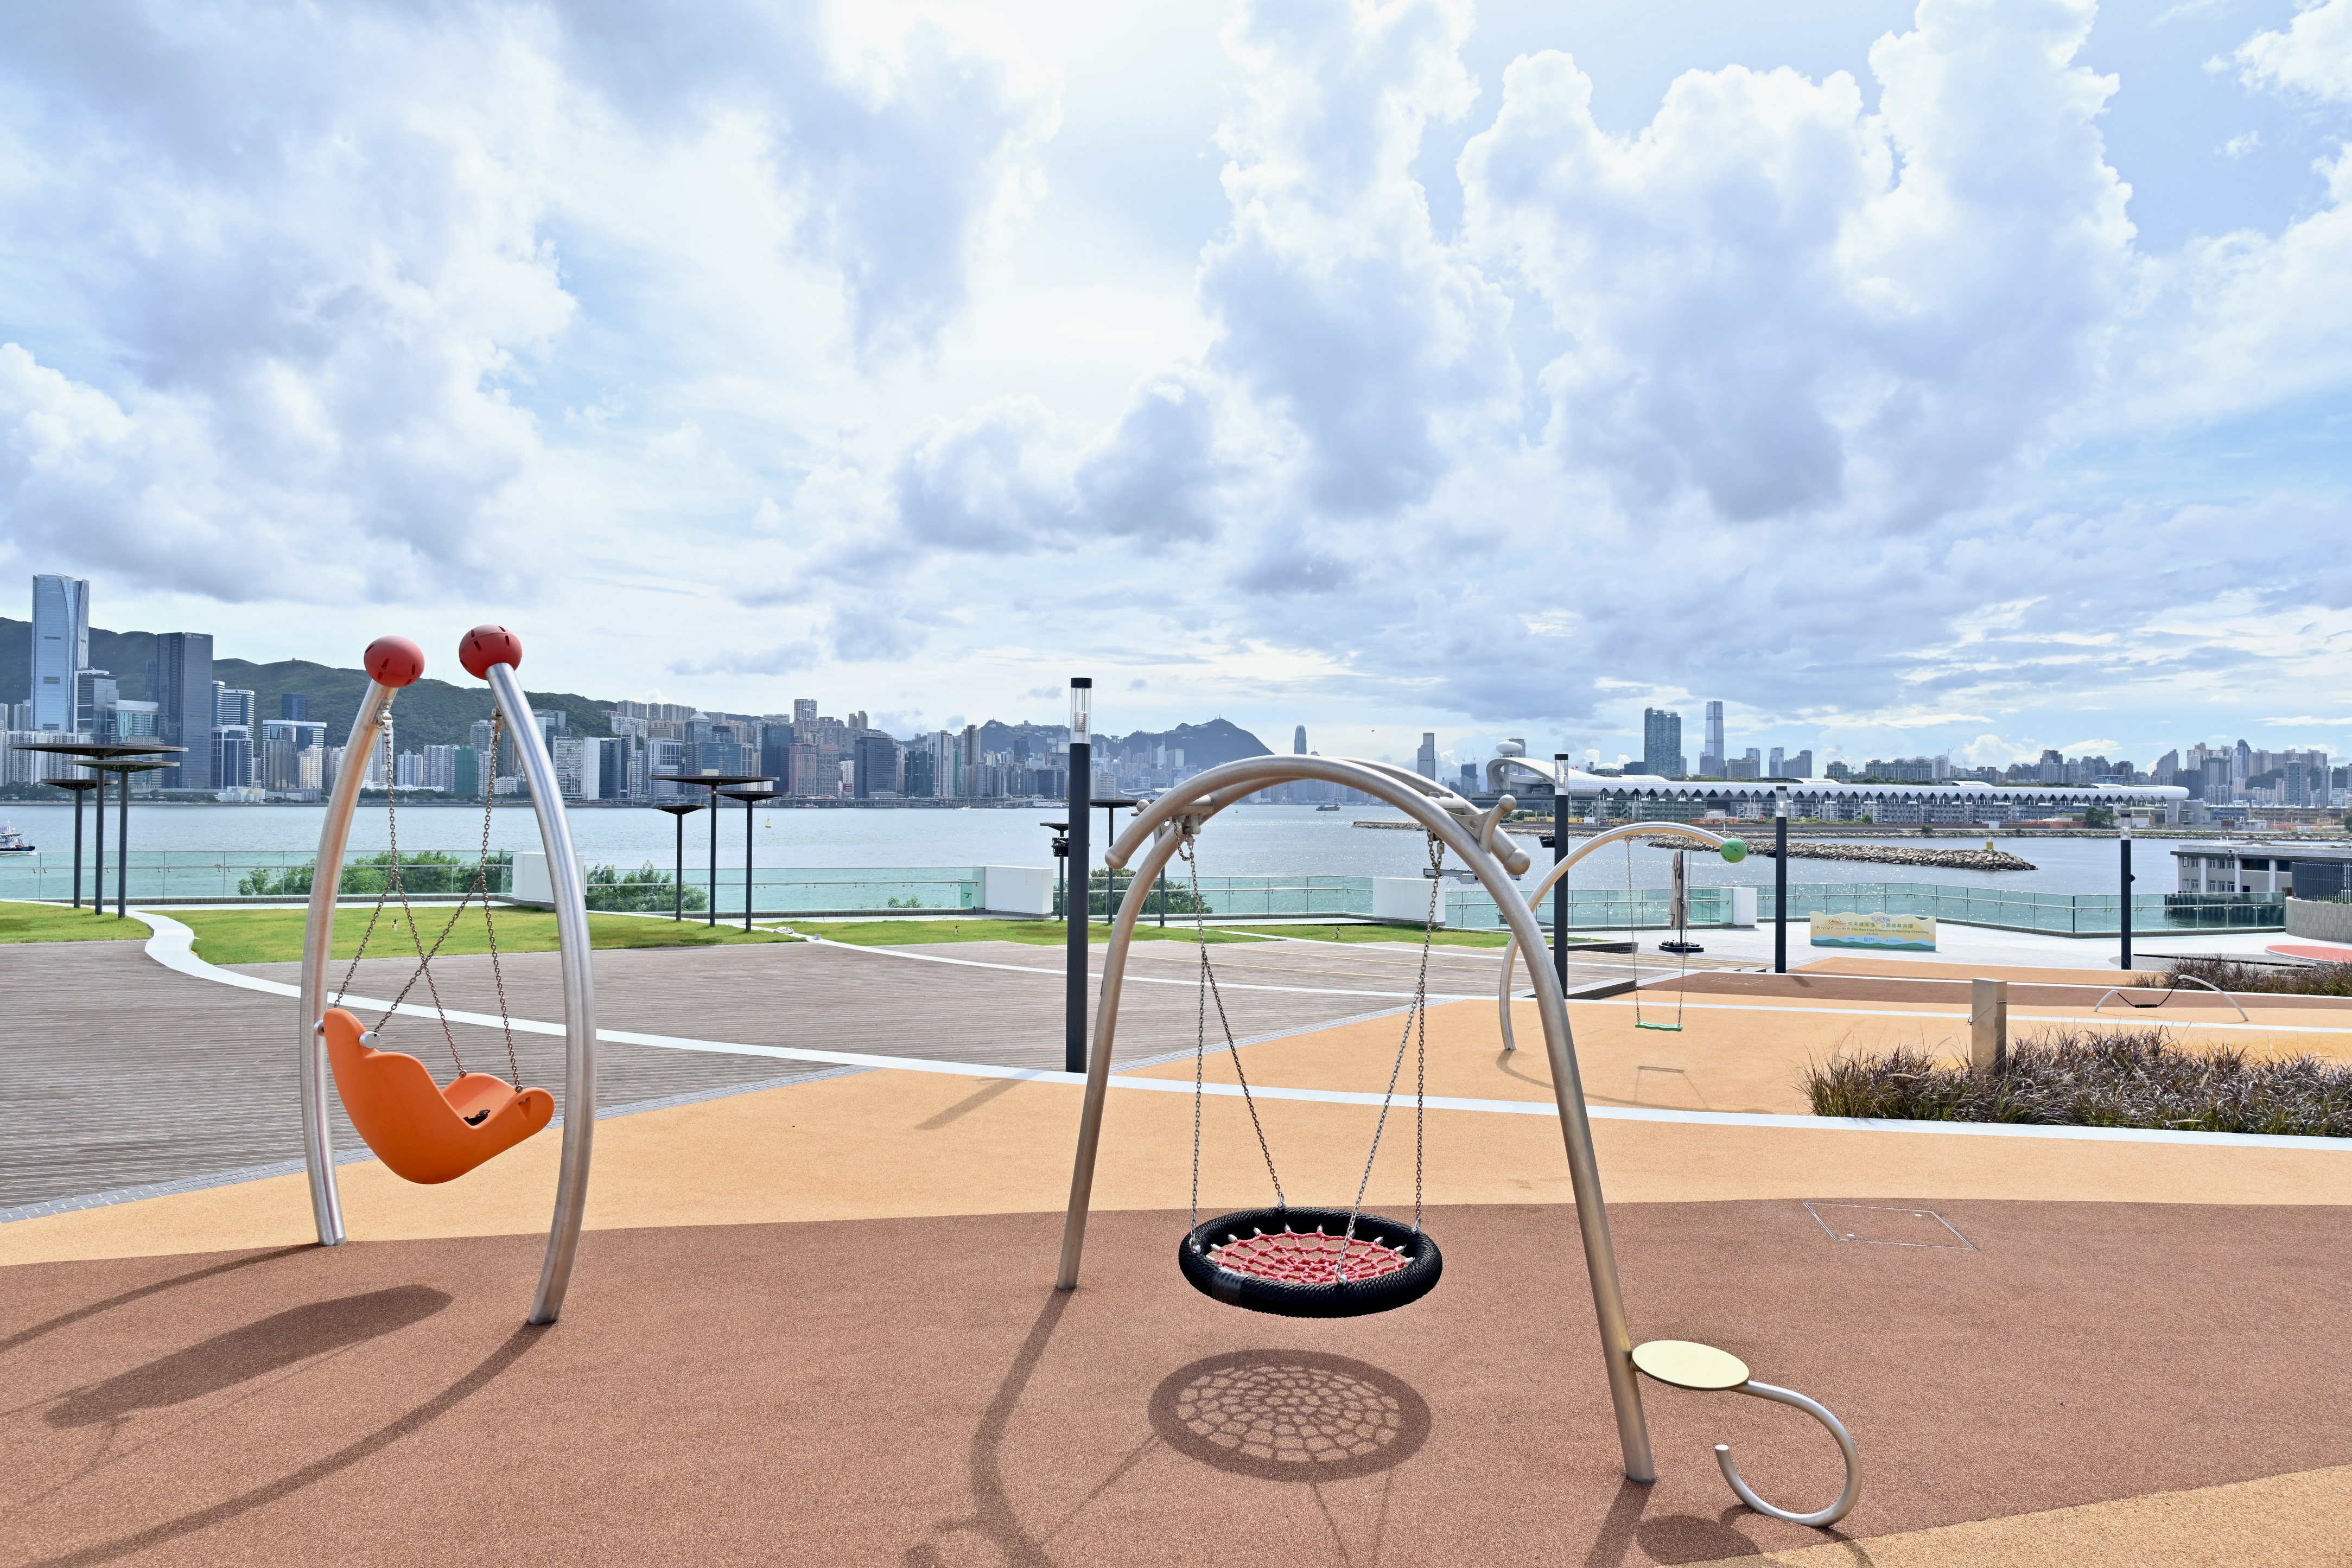 茶果岭海滨公园及翠屏海滨今日（八月二十四日）正式启用。图示公园园景平台上的儿童游乐设施。